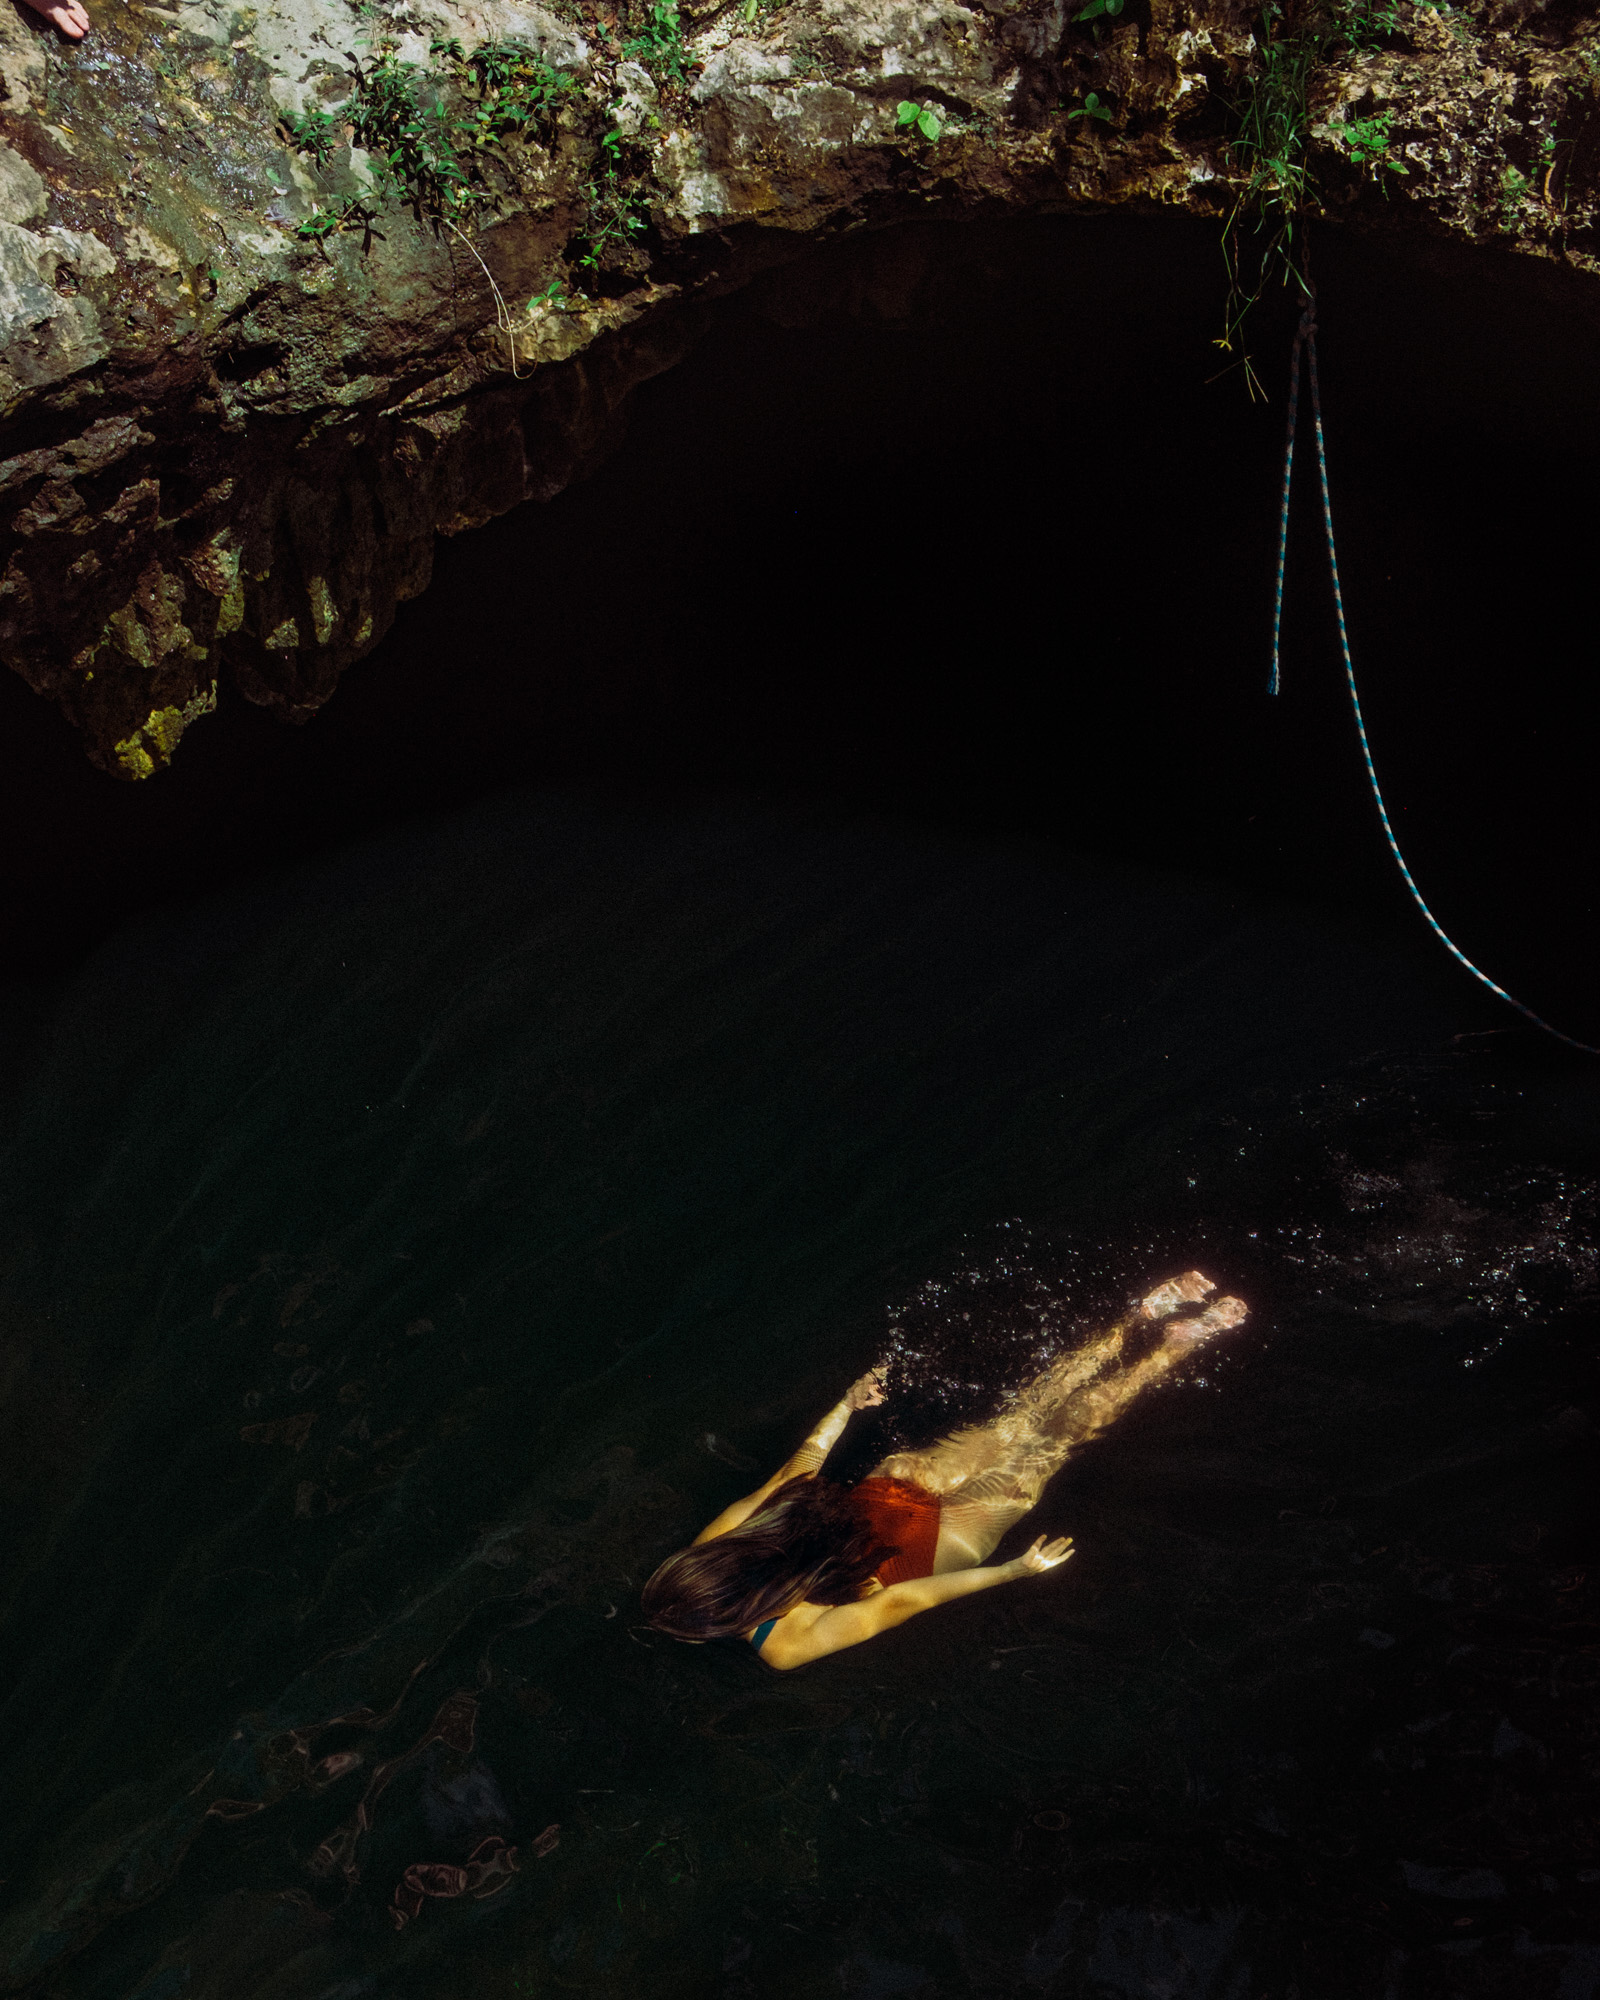 Rachel Off Duty: A Woman Swimming in Cenote Calavera, Tulum, Mexico